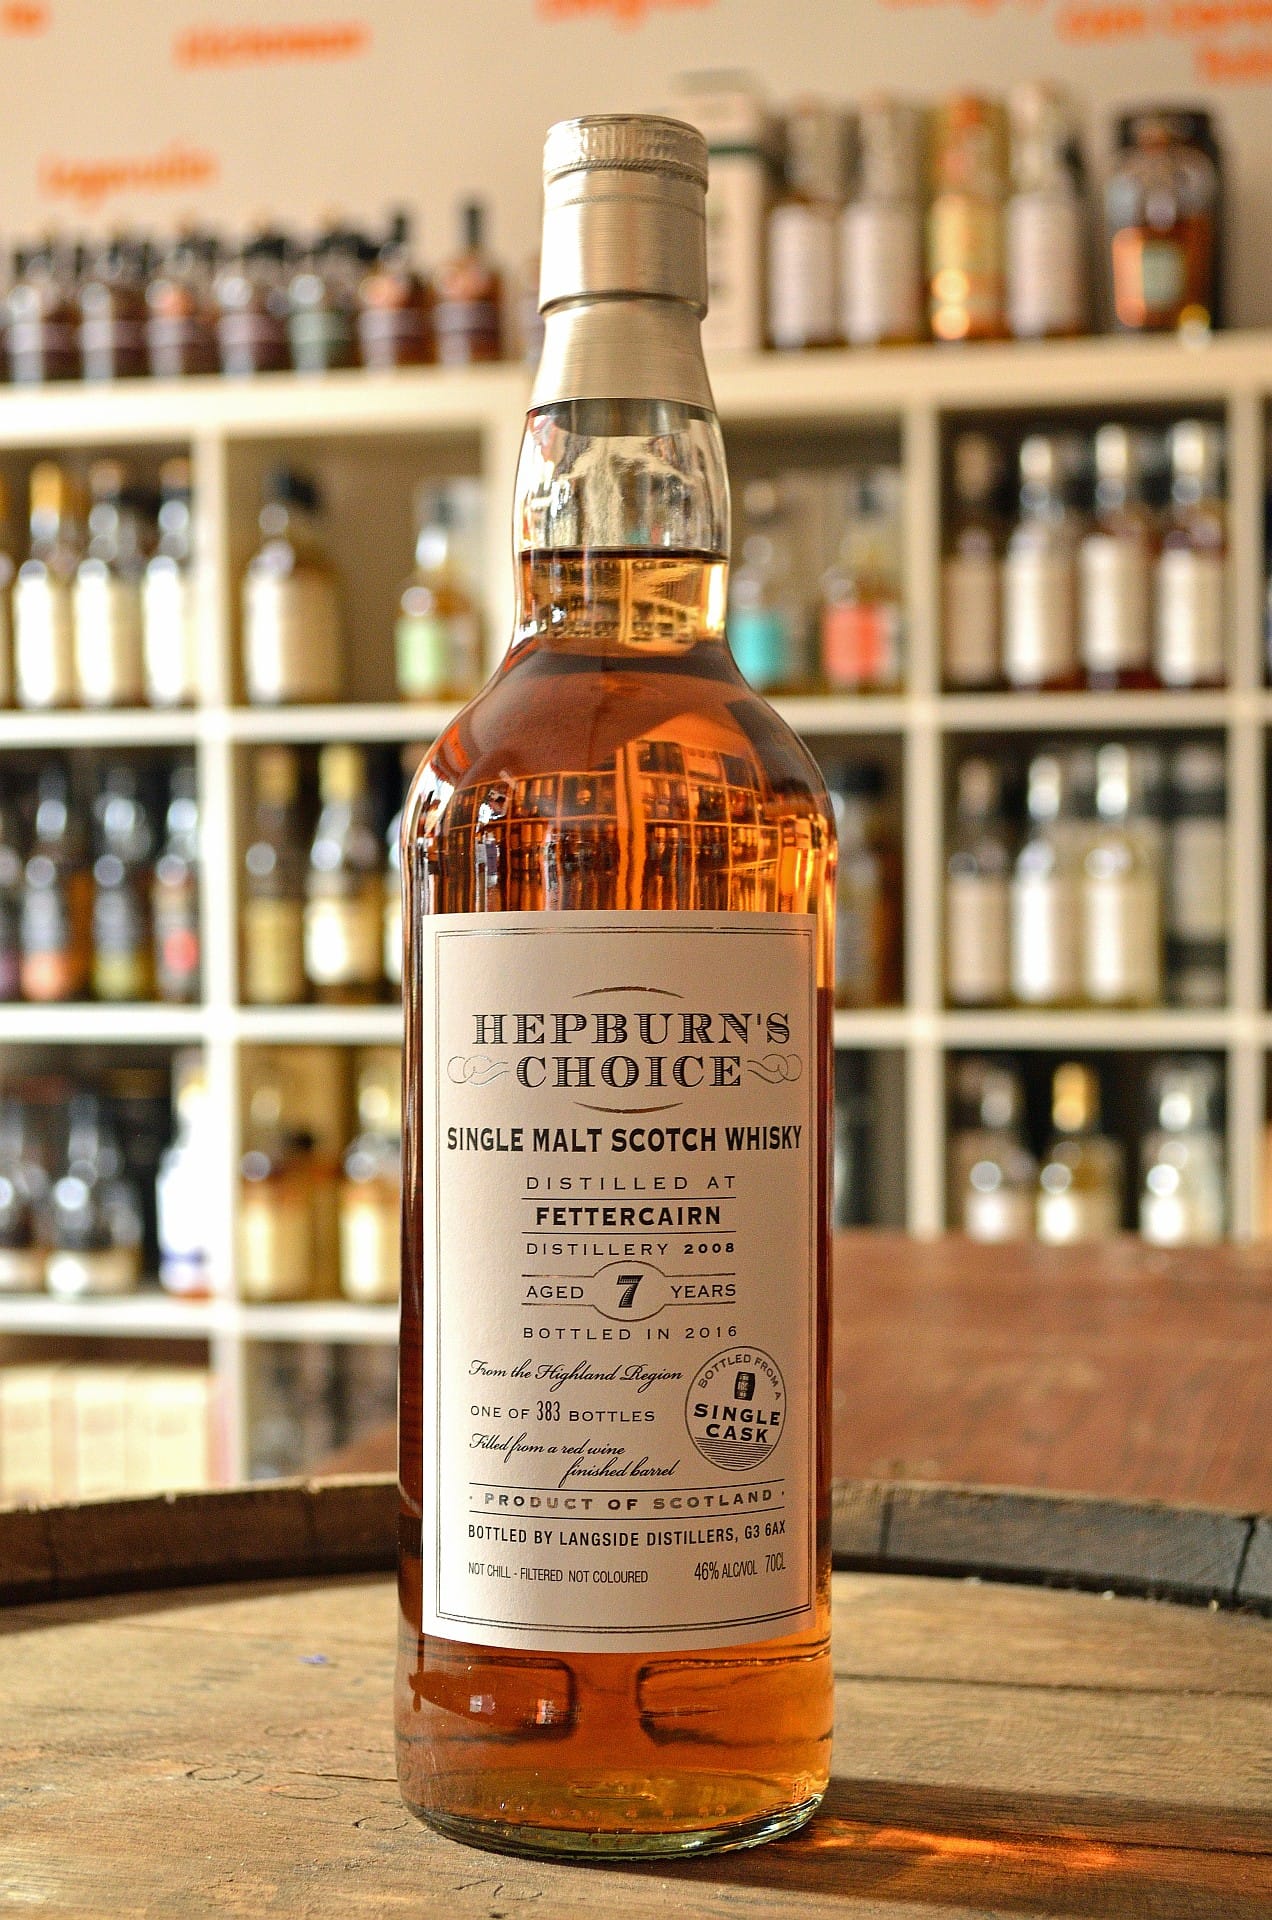 Von diesem Whisky gibt's nur 383 Flaschen: Der sieben Jahre alte Single Malt "Hepburn's Choice" ist in einem Rotwein-Barriquefass gelagert worden. Die Flasche kostet um 50 Euro.